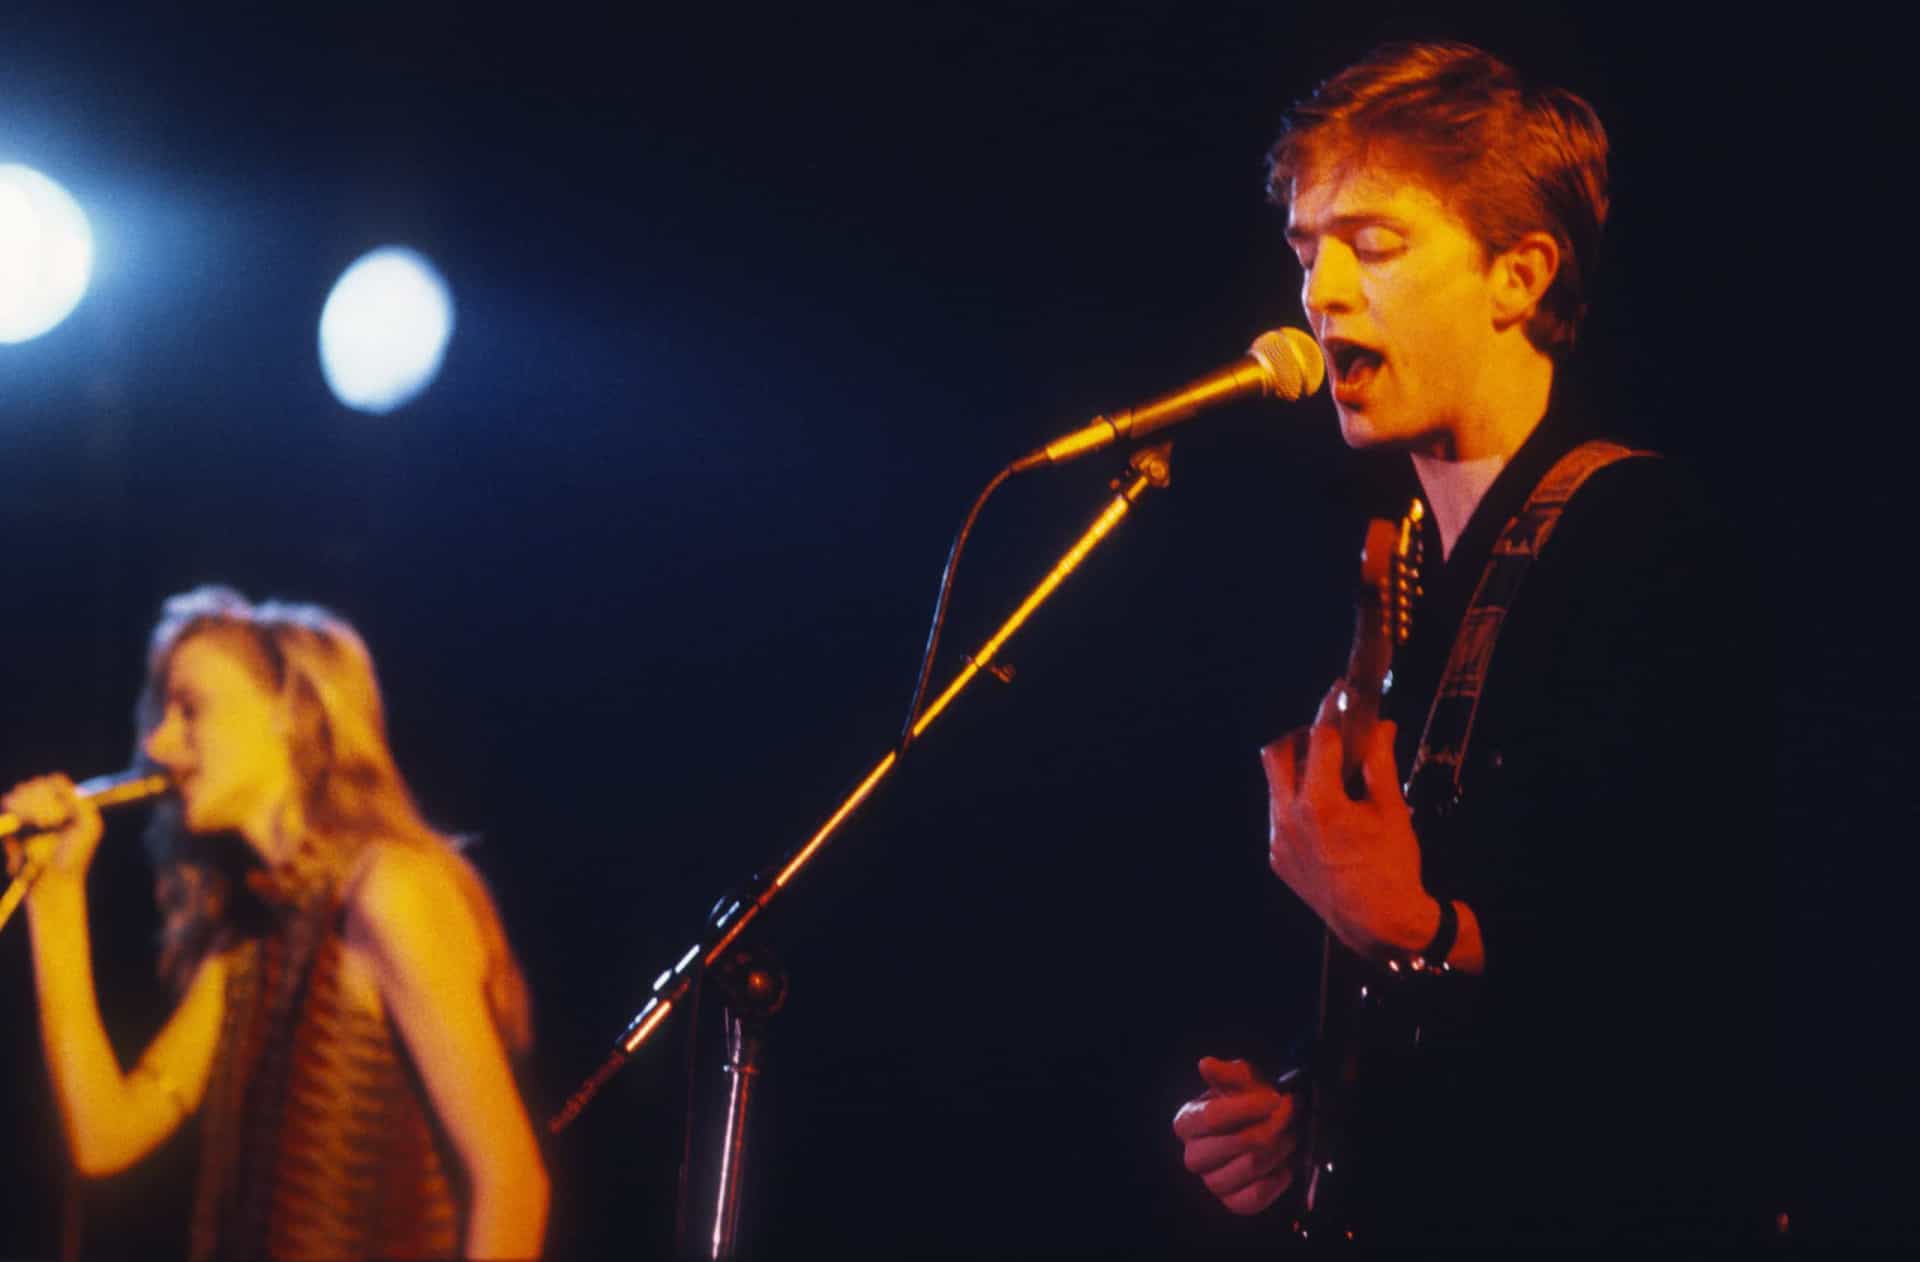 <p>Die zweite Single der englischen Band Prefab Sprout und die erste mit der Sängerin und Gitarristin Wendy Smith, "The Devil Has All the Best Tunes", erzielte 1983 einen mäßigen Erfolg. </p><p>Quellen: (<a href="https://www.latimes.com/entertainment-arts/story/2020-07-25/fleetwood-mac-peter-green-dies" rel="noopener">Los Angeles Times</a>)</p><p>Auch interessant: <a href="https://de.starsinsider.com/musik/506504/schon-mal-hingehoert-diese-gruseligen-songs-handeln-von-stalkern-und-obsessionen">Schon mal hingehört? Diese gruseligen Songs handeln von Stalkern und Obsessionen</a></p>